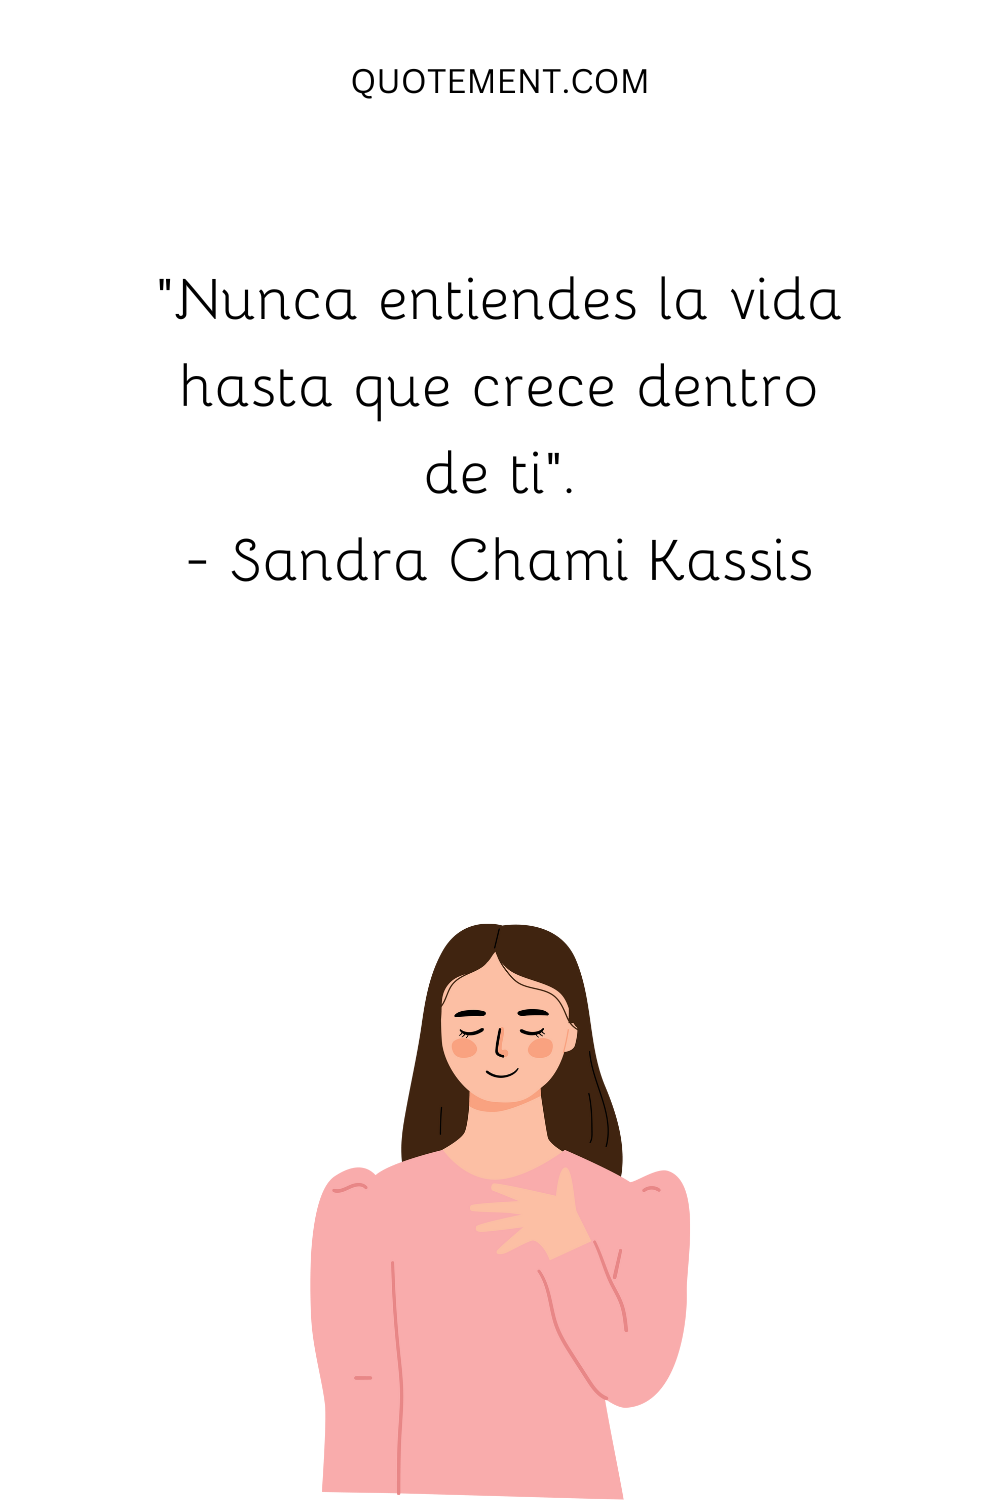 "Nunca entiendes la vida hasta que crece dentro de ti". - Sandra Chami Kassis